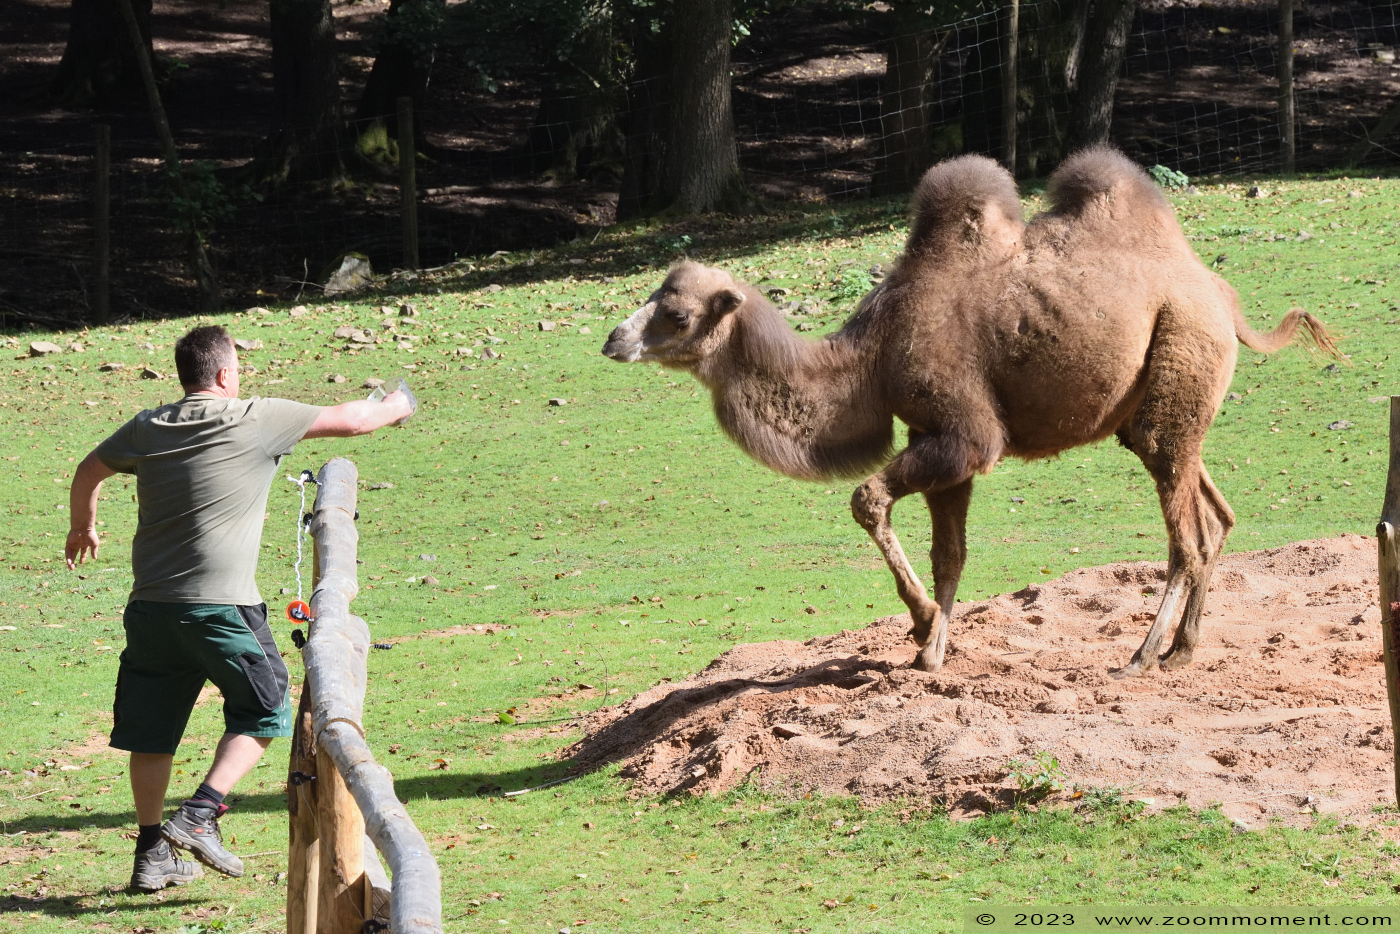 kameel (  Camelus bactrianus bactrianus ) camel
Trefwoorden: Neunkircher Zoo Germany kameel Camelus bactrianus bactrianus camel